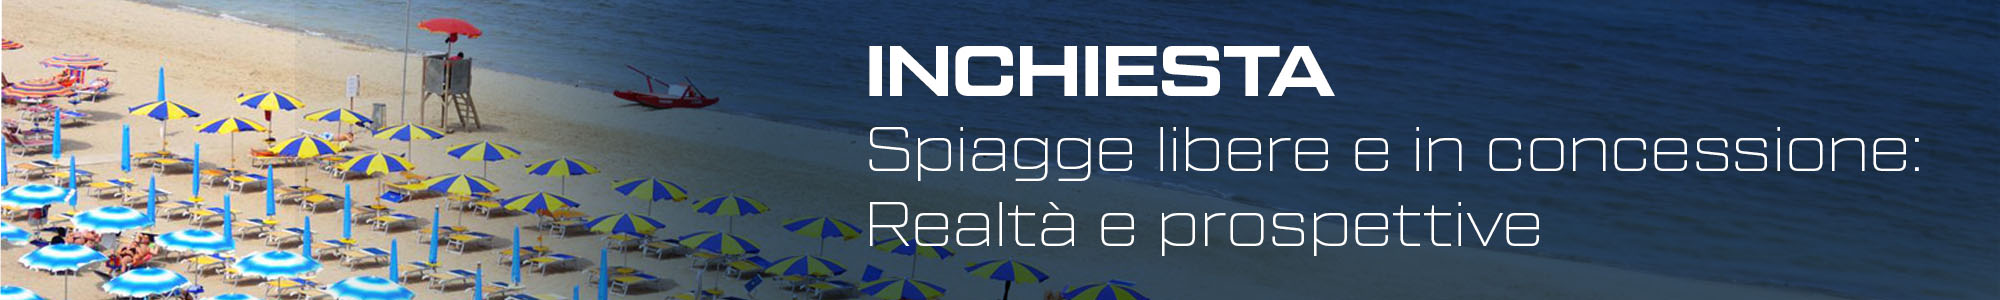 Inchiesta - Spiagge libere